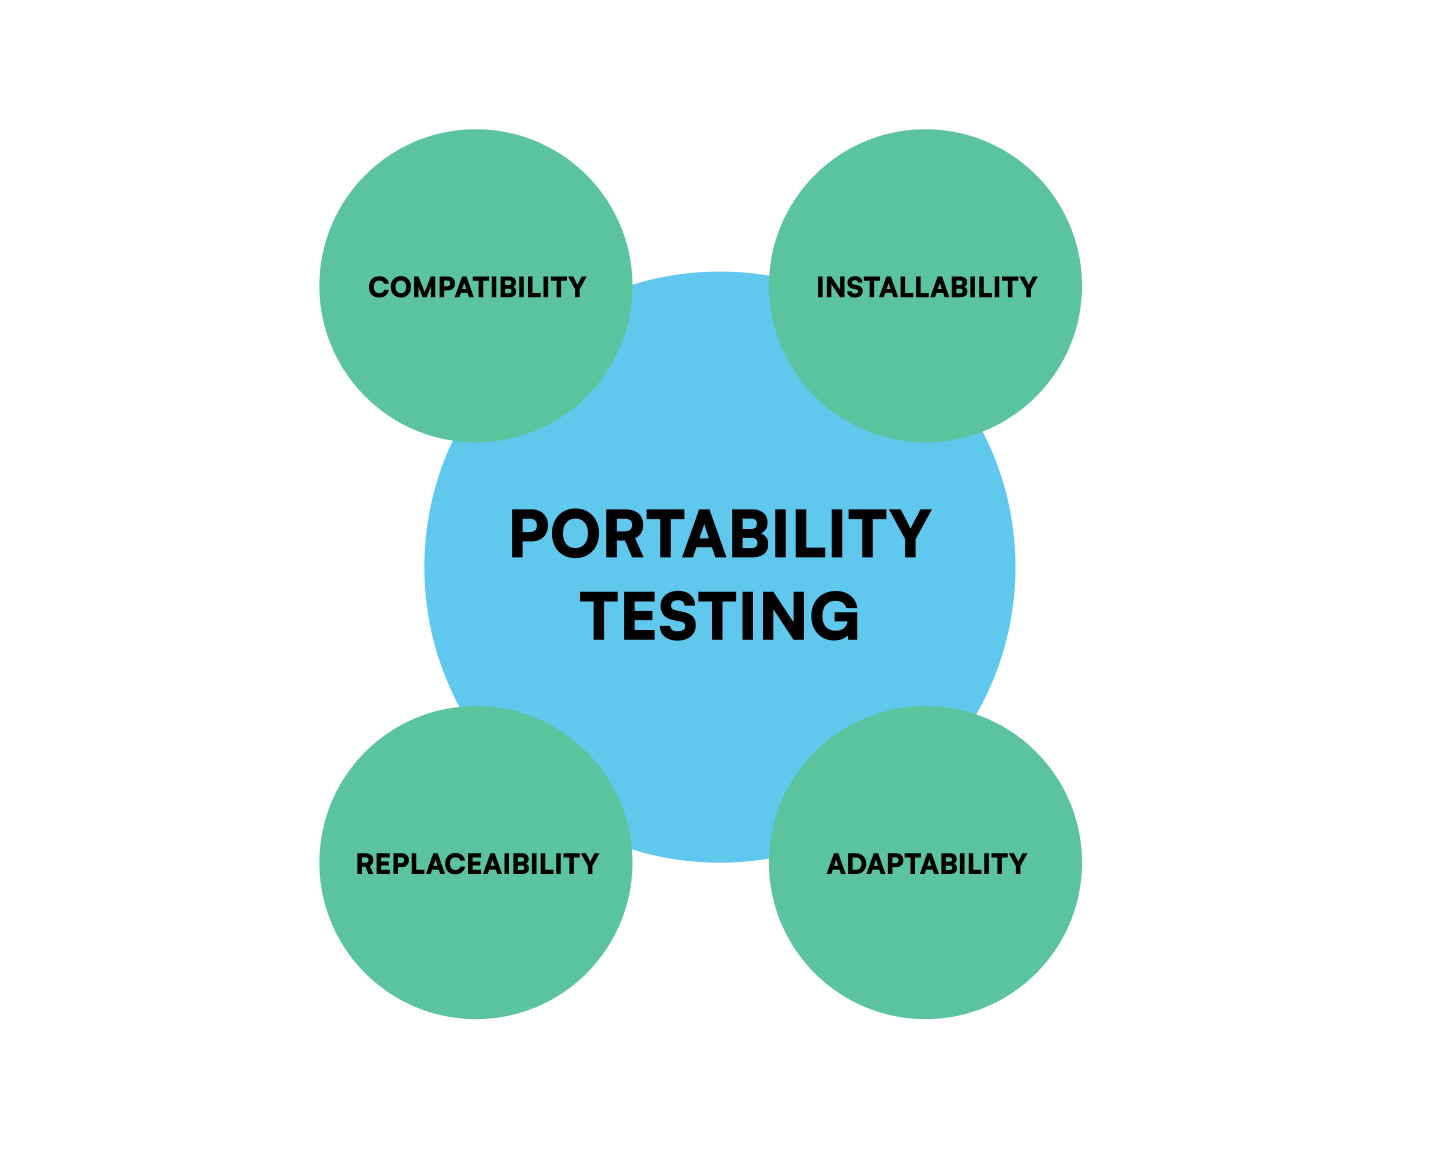 Portability testing